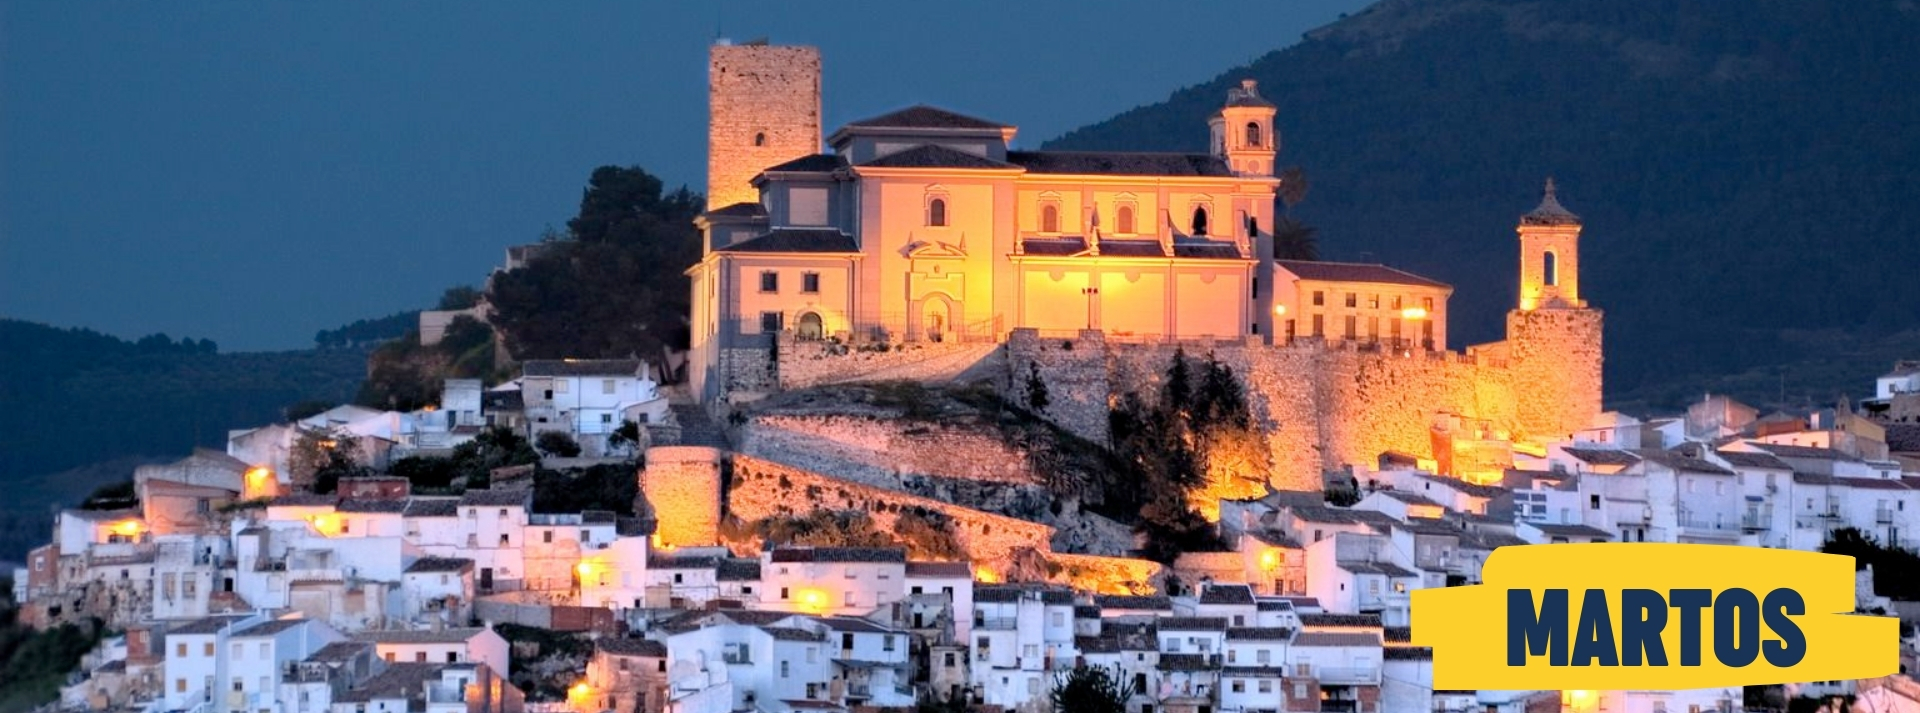 Europroyectos - Residences - Martos - Jaén - Andalucía - Spain